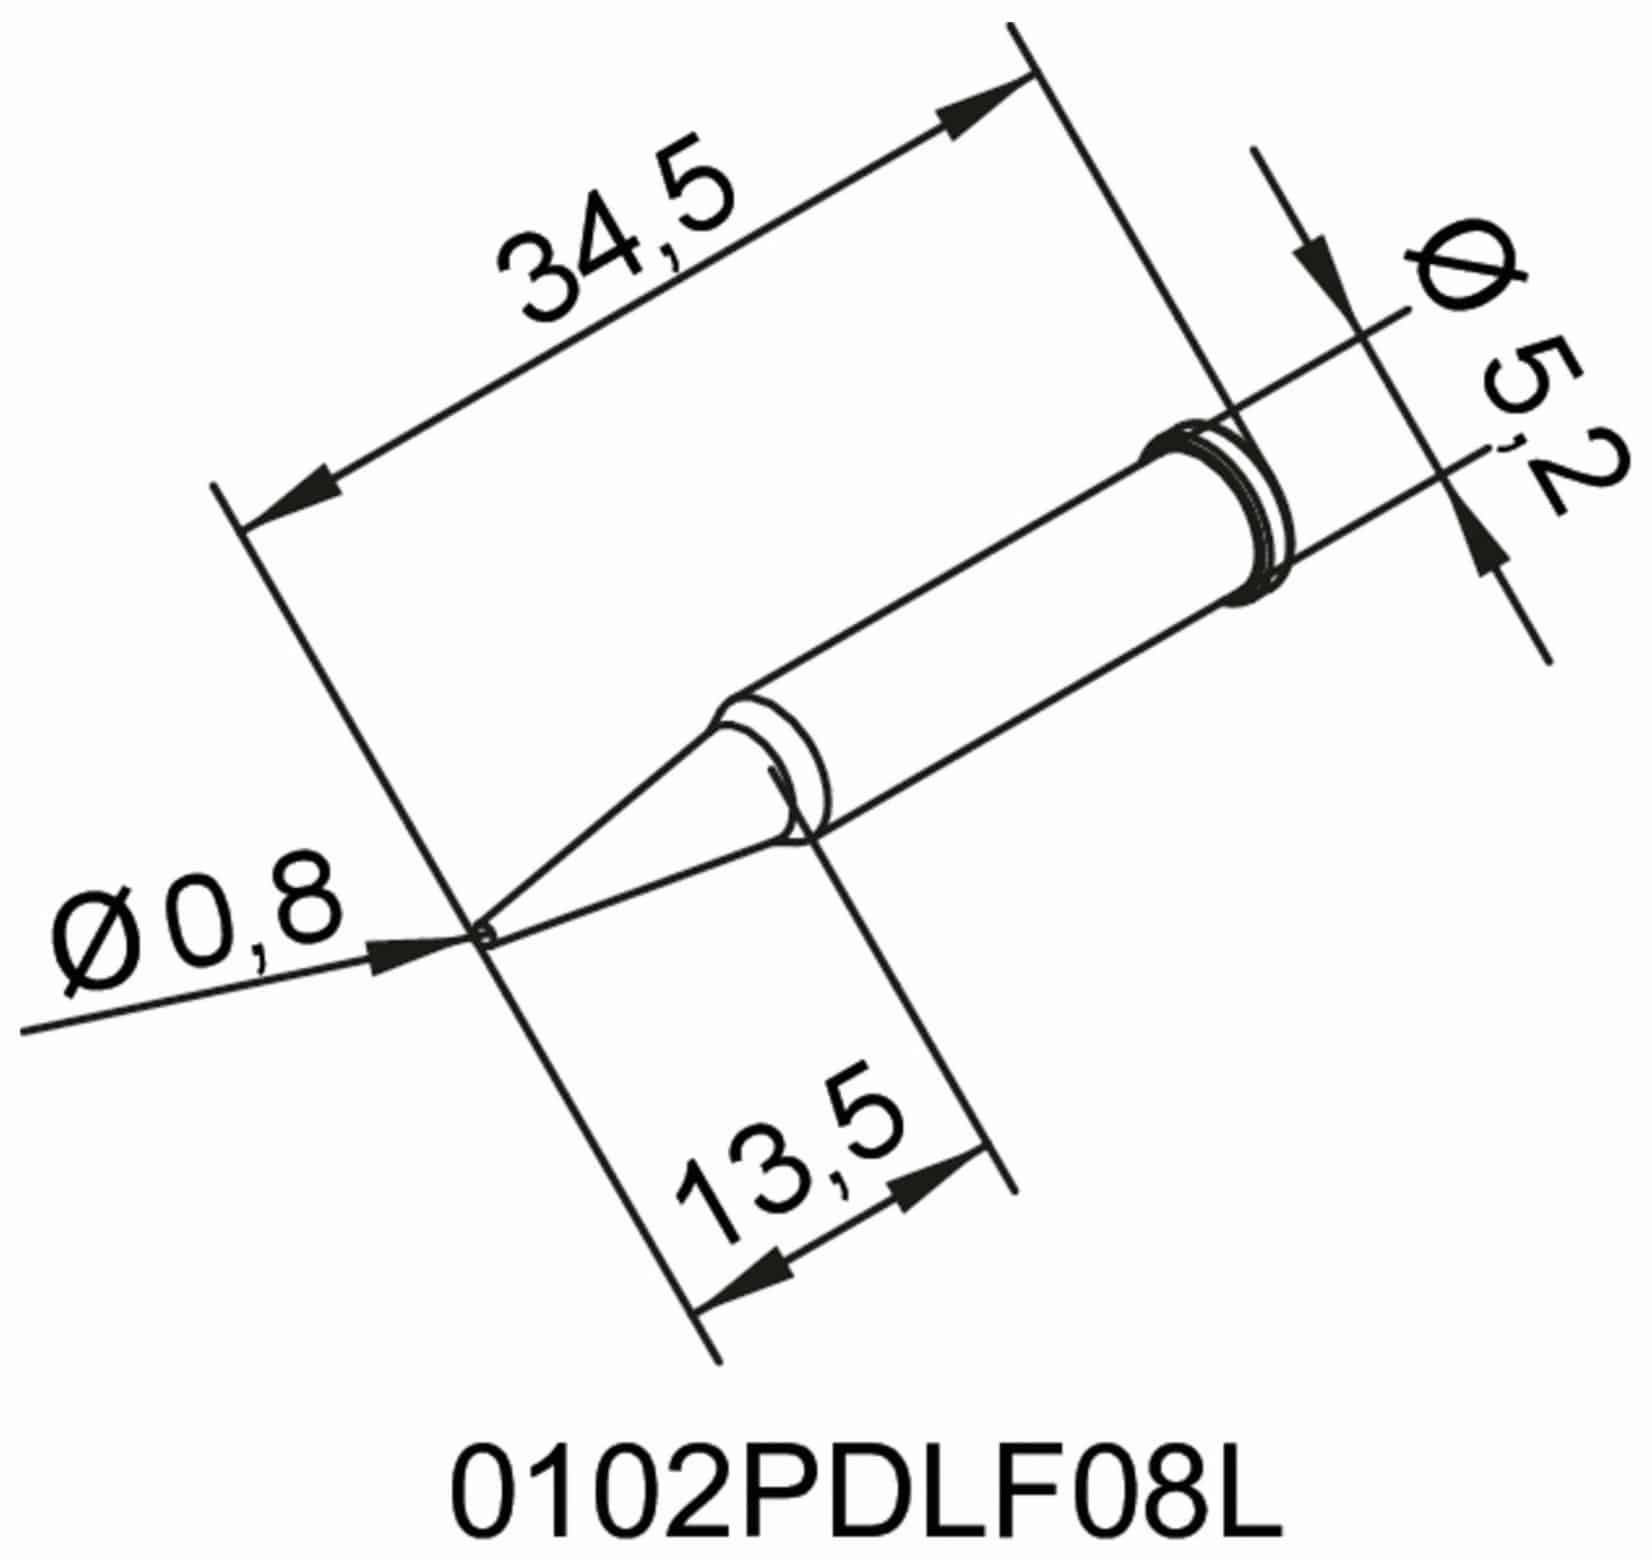 ERSA Lötspitze, 0102PDLF08L/SB, bleistiftspitz, verlängert, 0,8 mm